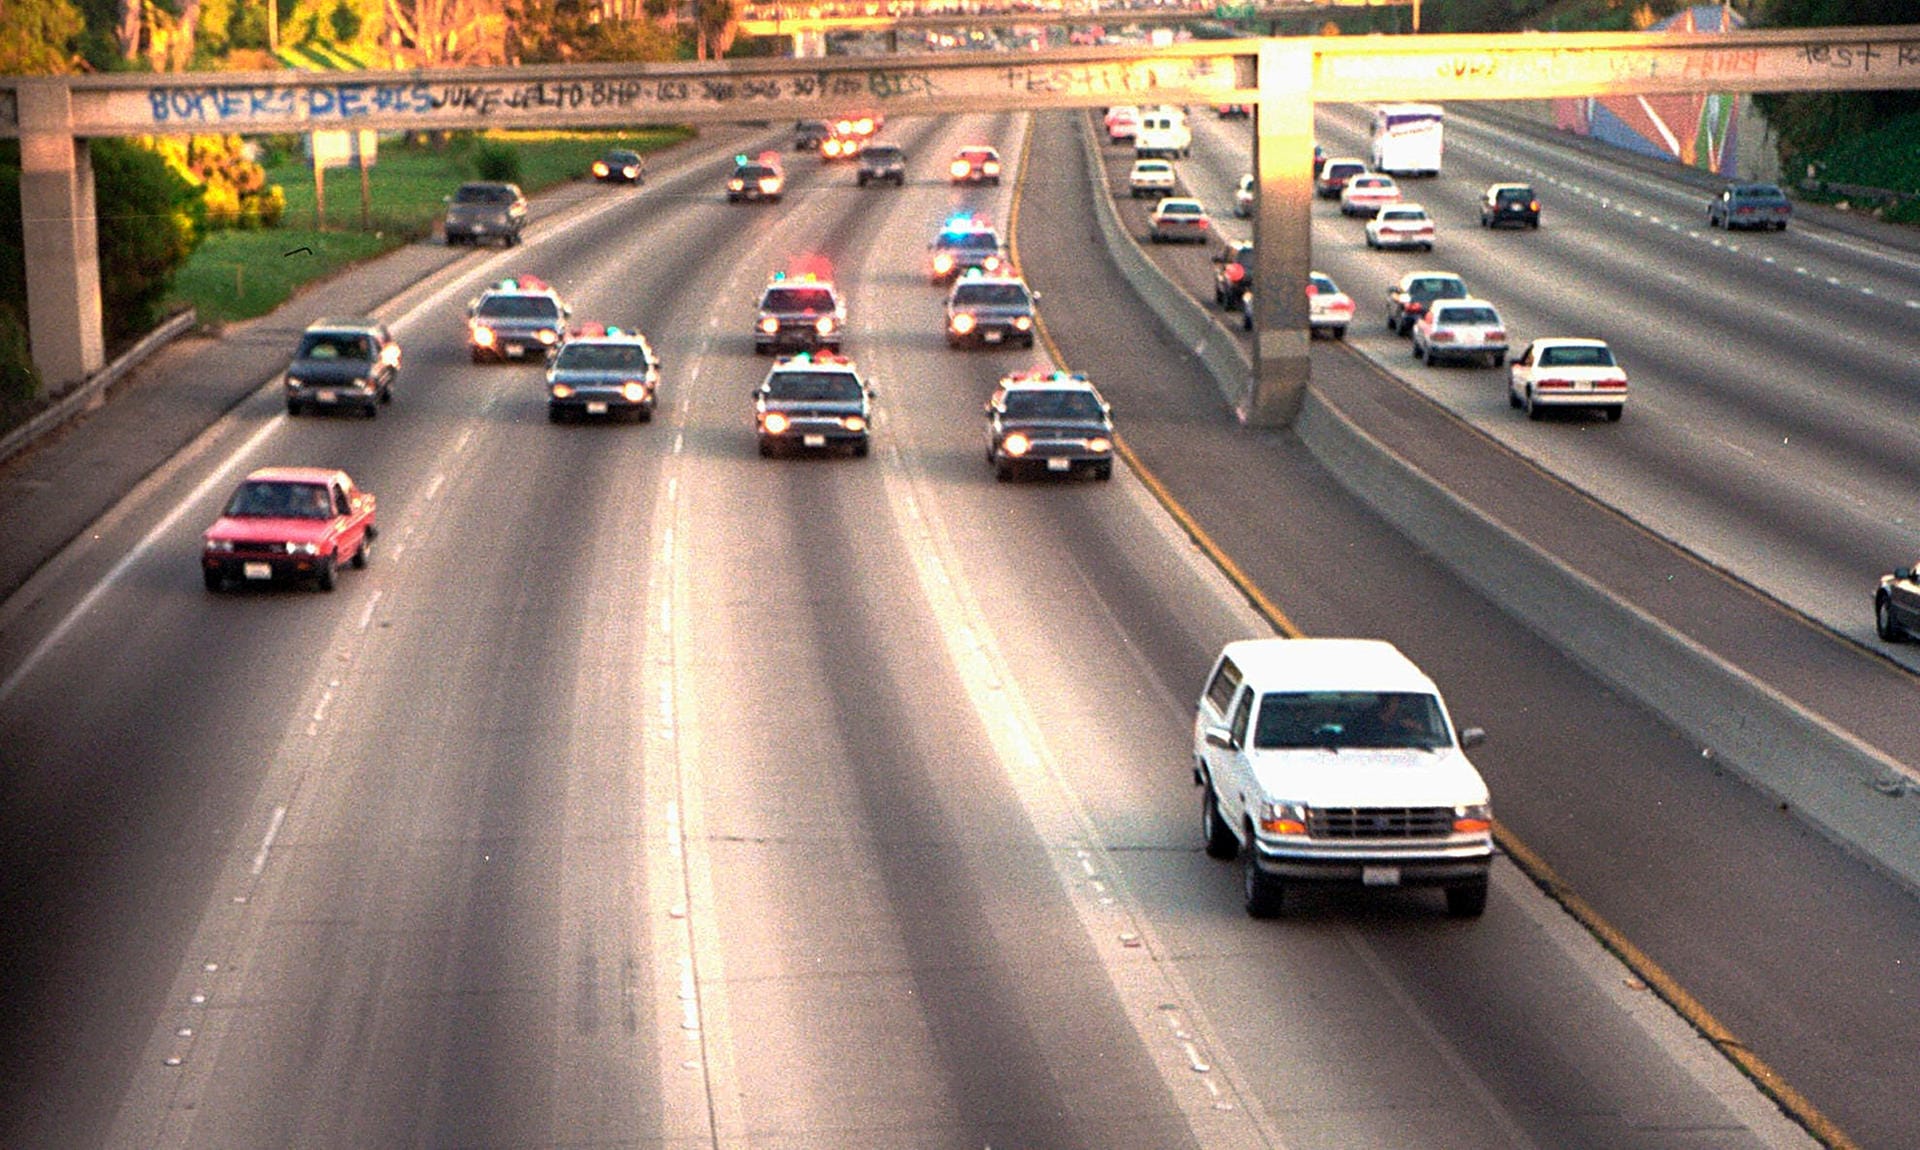 17.06.1994: Ein weißer Ford Bronco, gefahren von Al Cowlings mit O.J. Simpson an Bord, wird von Polizeiautos verfolgt, während er auf einer Autobahn in Los Angeles unterwegs ist.